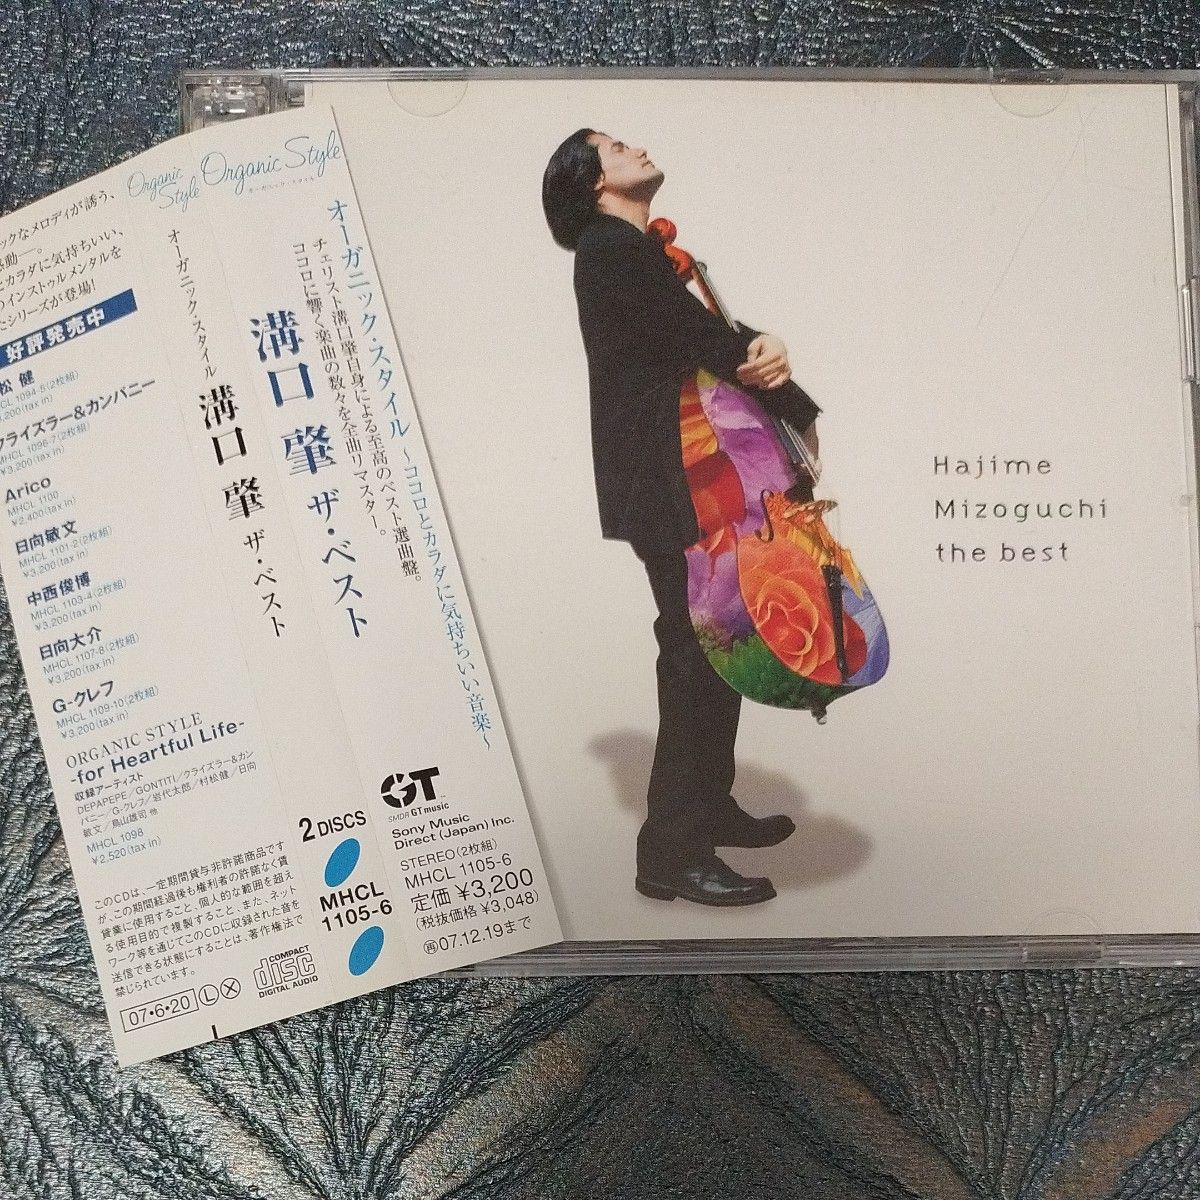 溝口肇 / オーガニック・スタイル 溝口肇 the BEST [2CD]